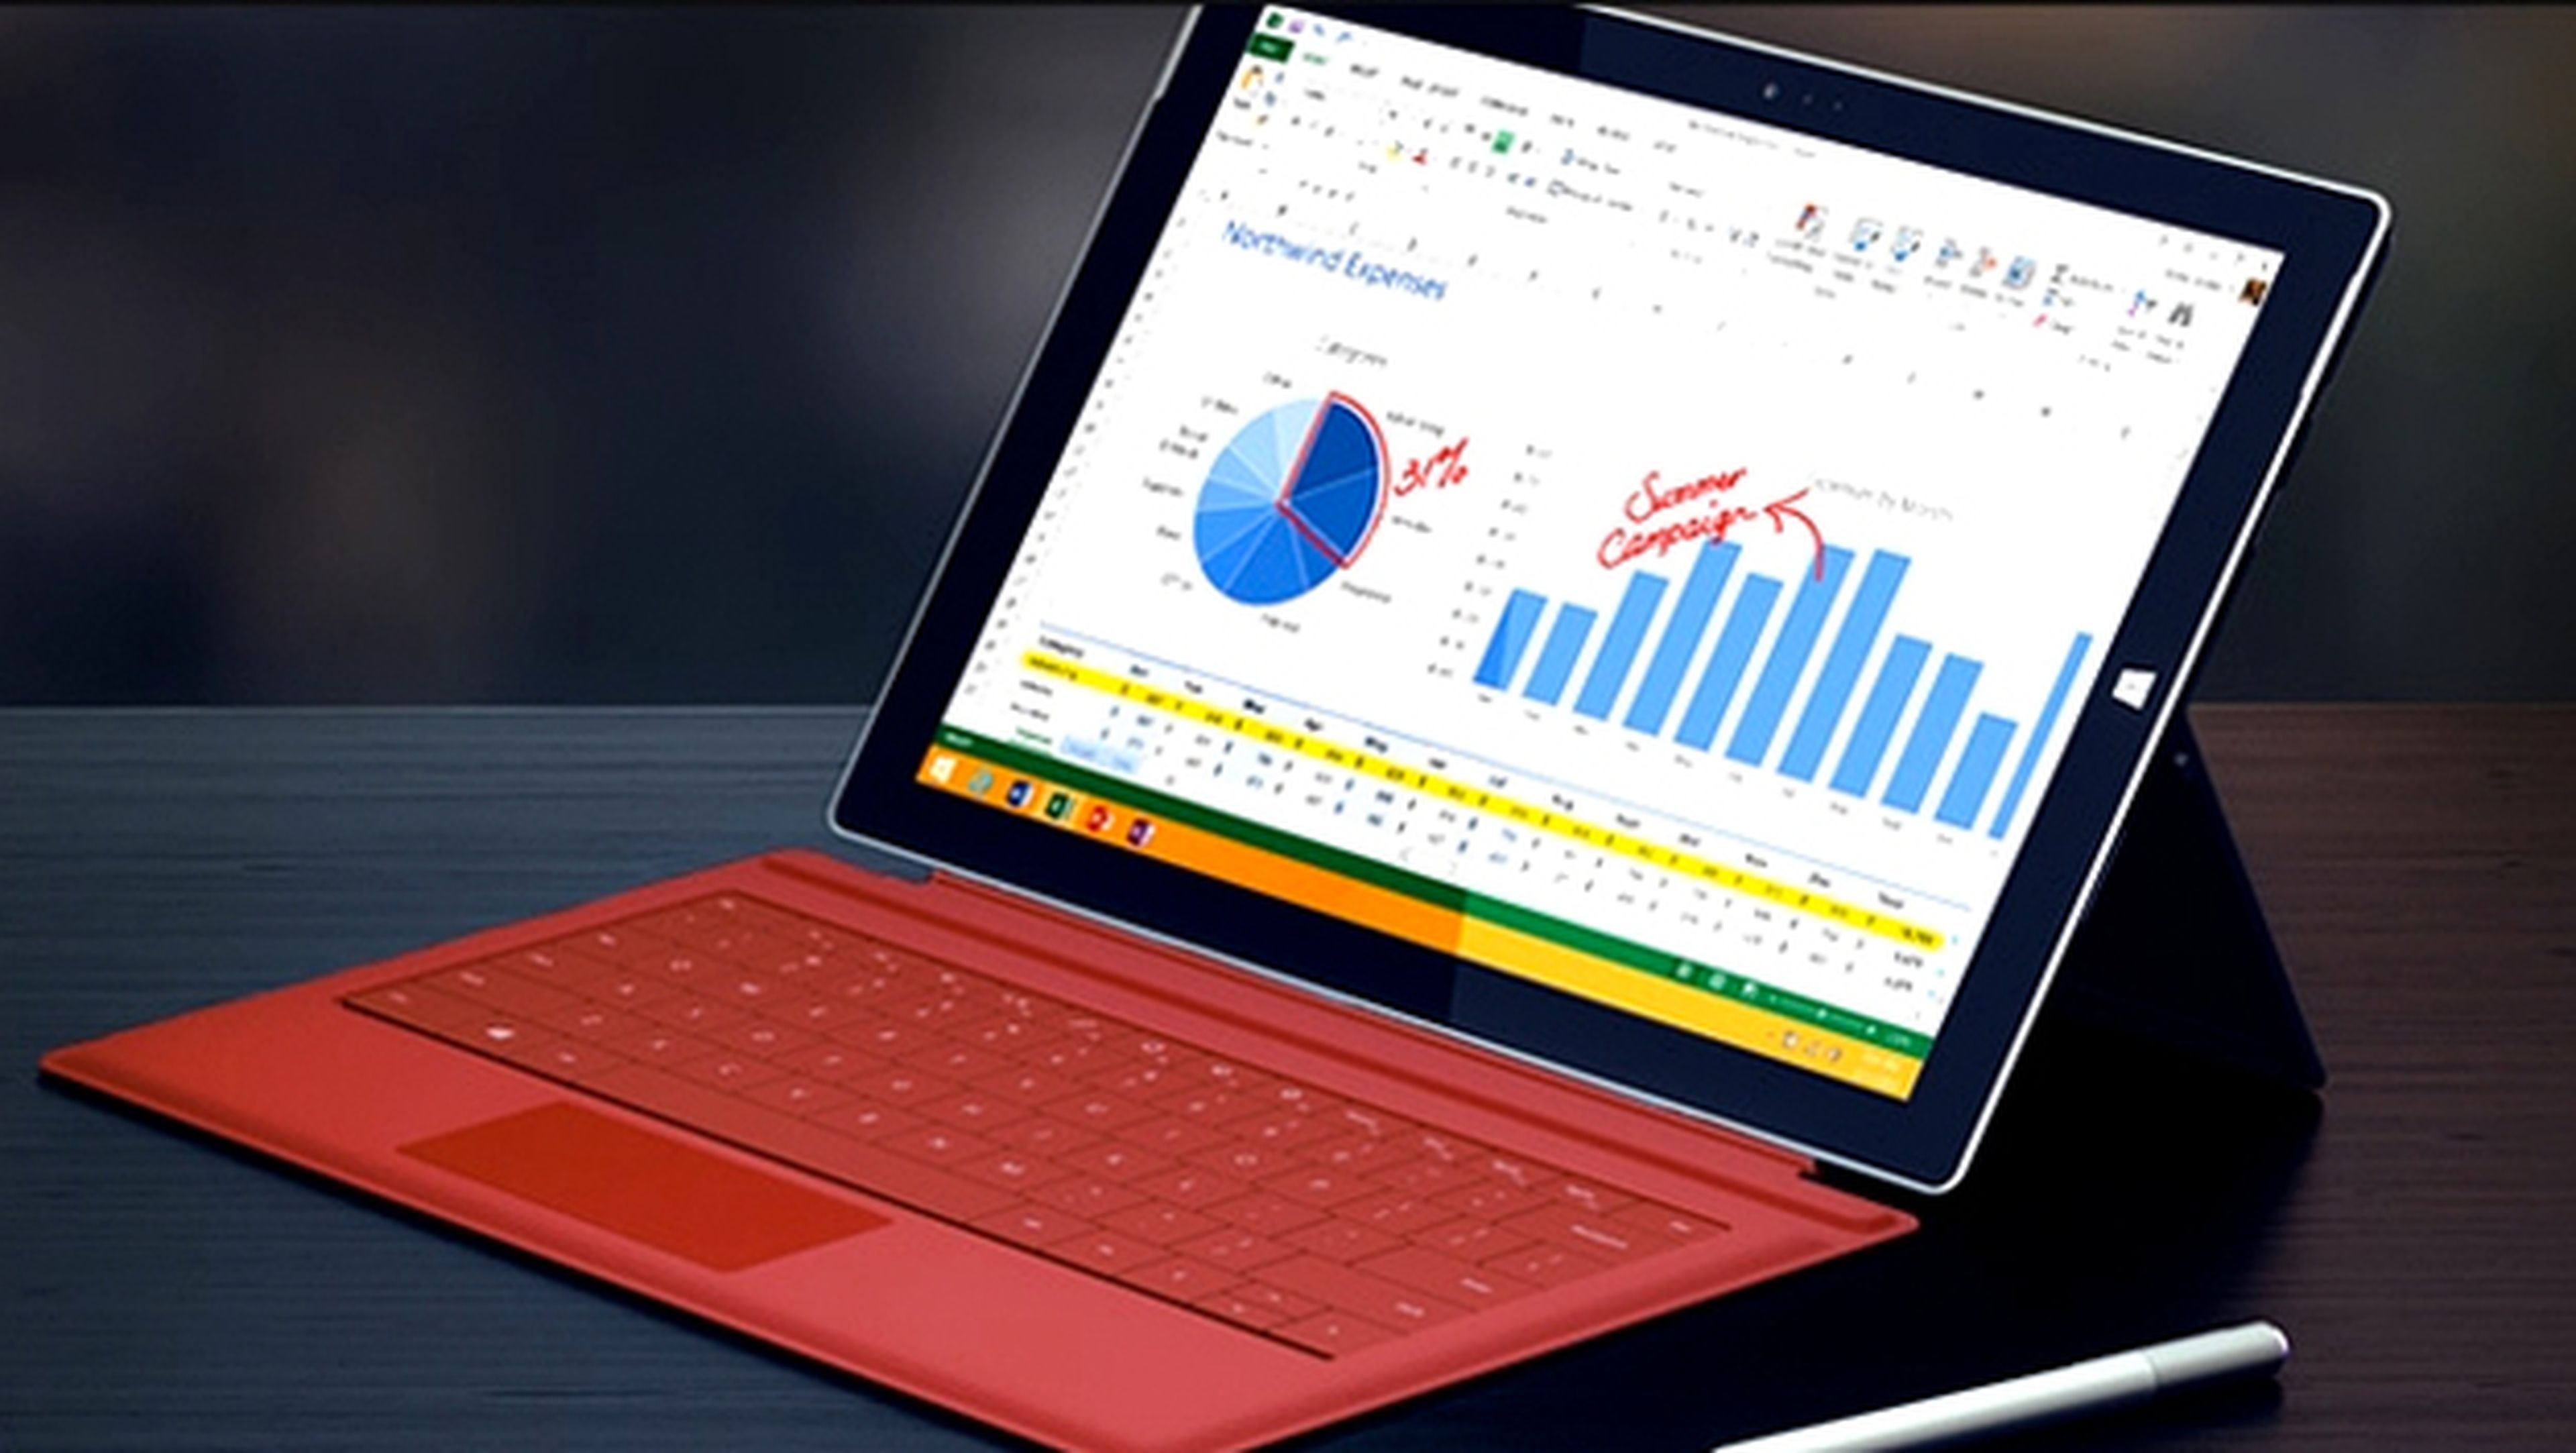 Microsoft Surface Pro 3 tendrá una edición exclusiva en rojo